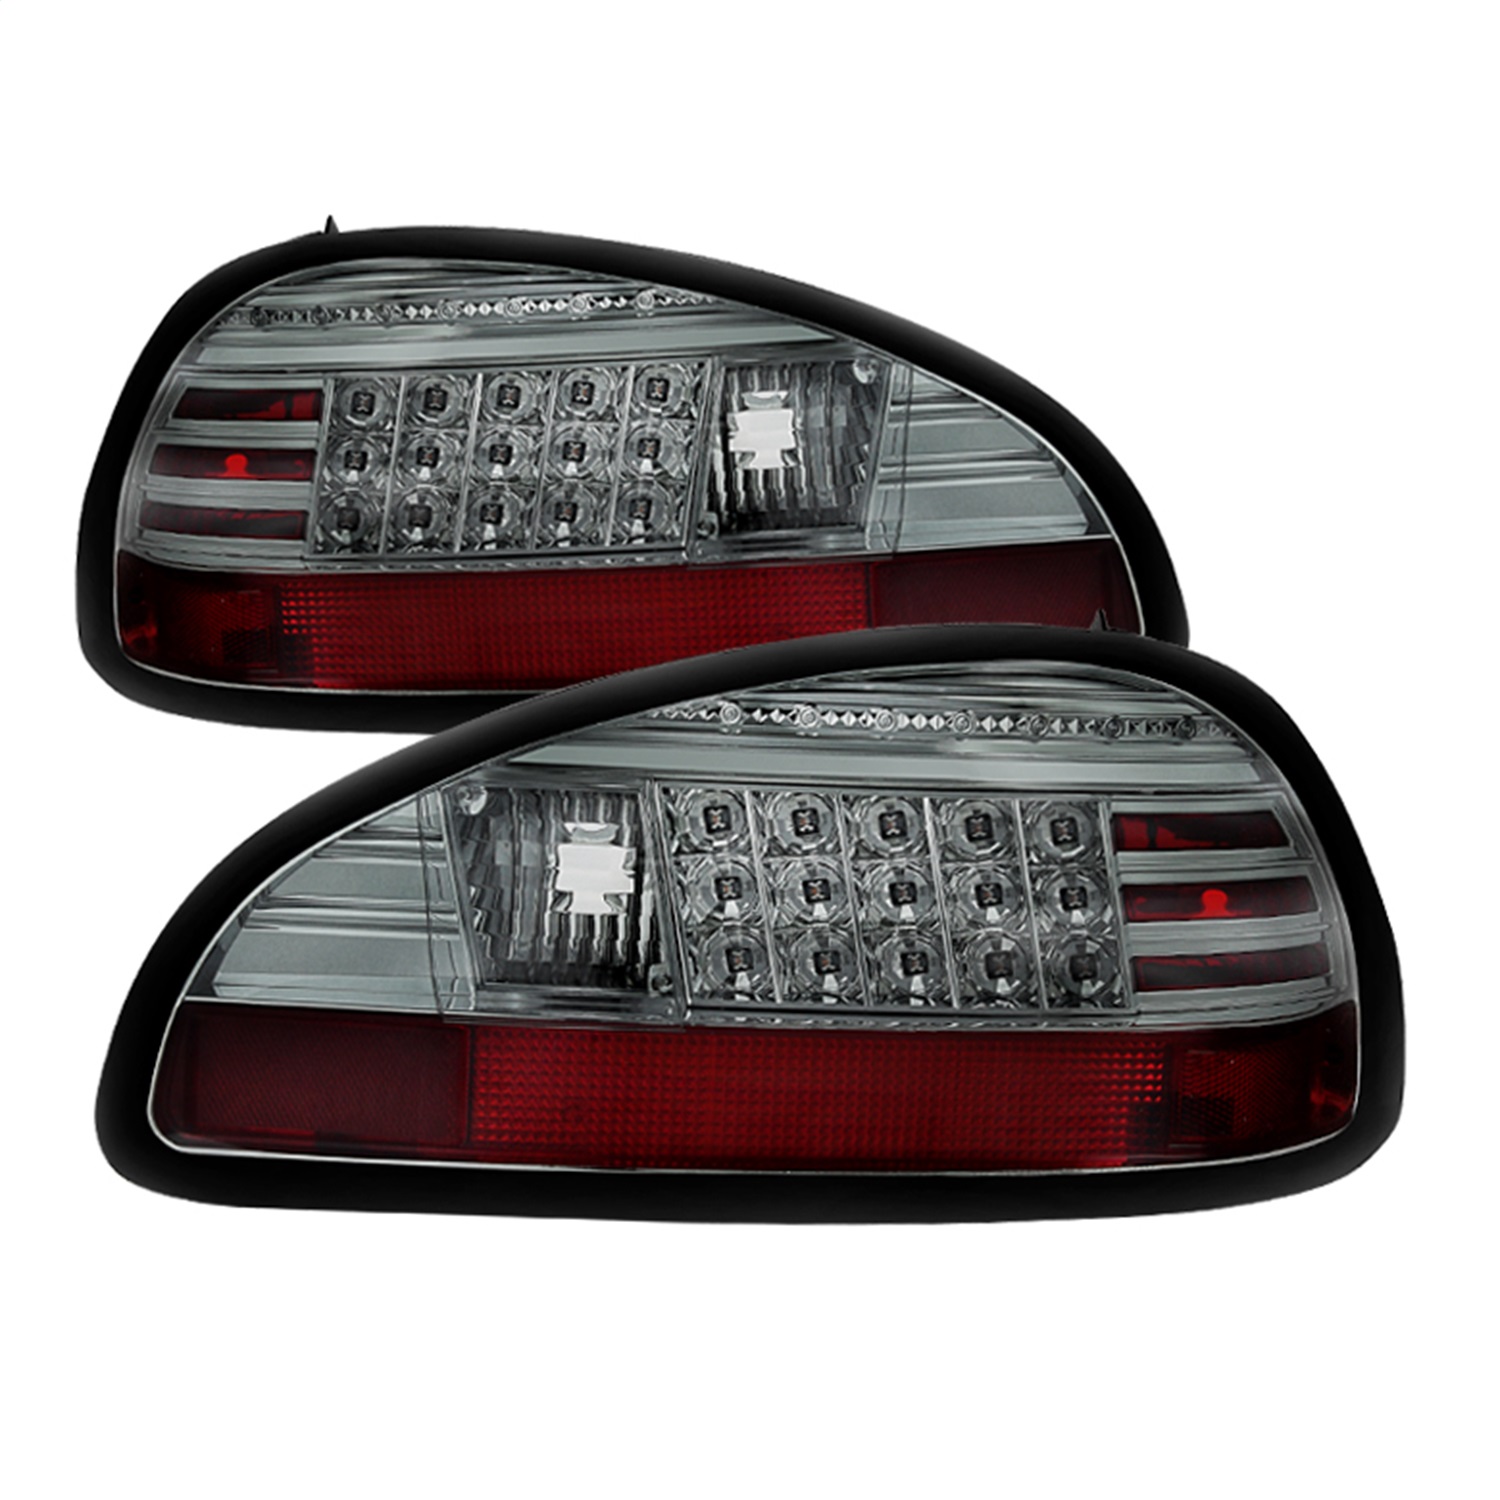 Spyder Auto 5007179 LED Tail Lights Fits 97-03 Grand Prix